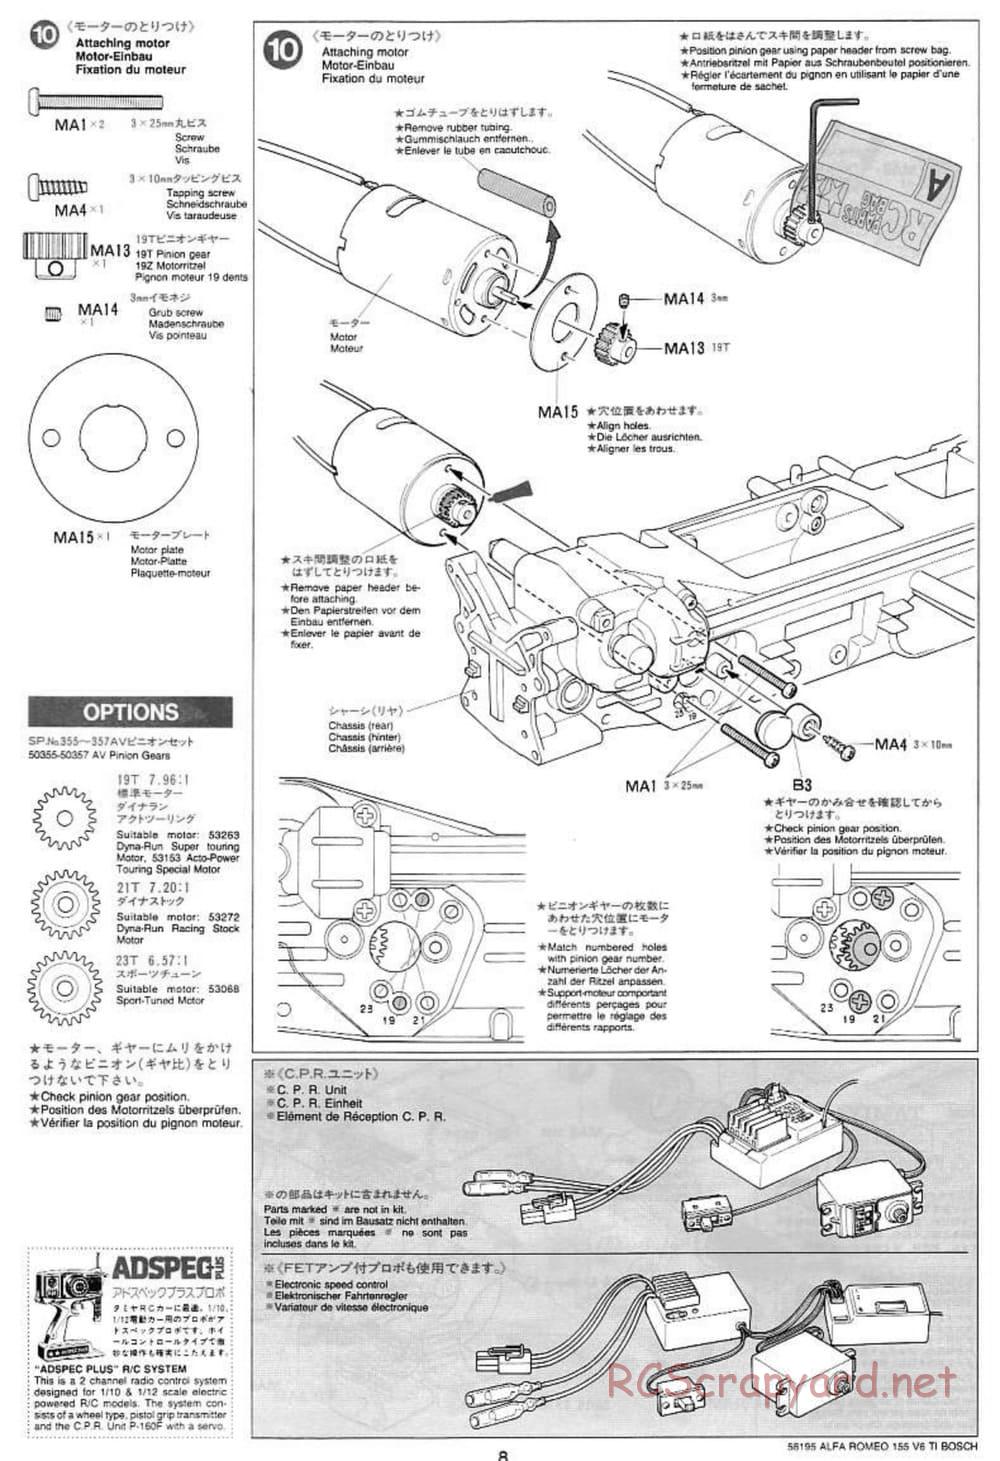 Tamiya - Alfa Romeo 155 V6 TI BOSCH - TL-01 Chassis - Manual - Page 8